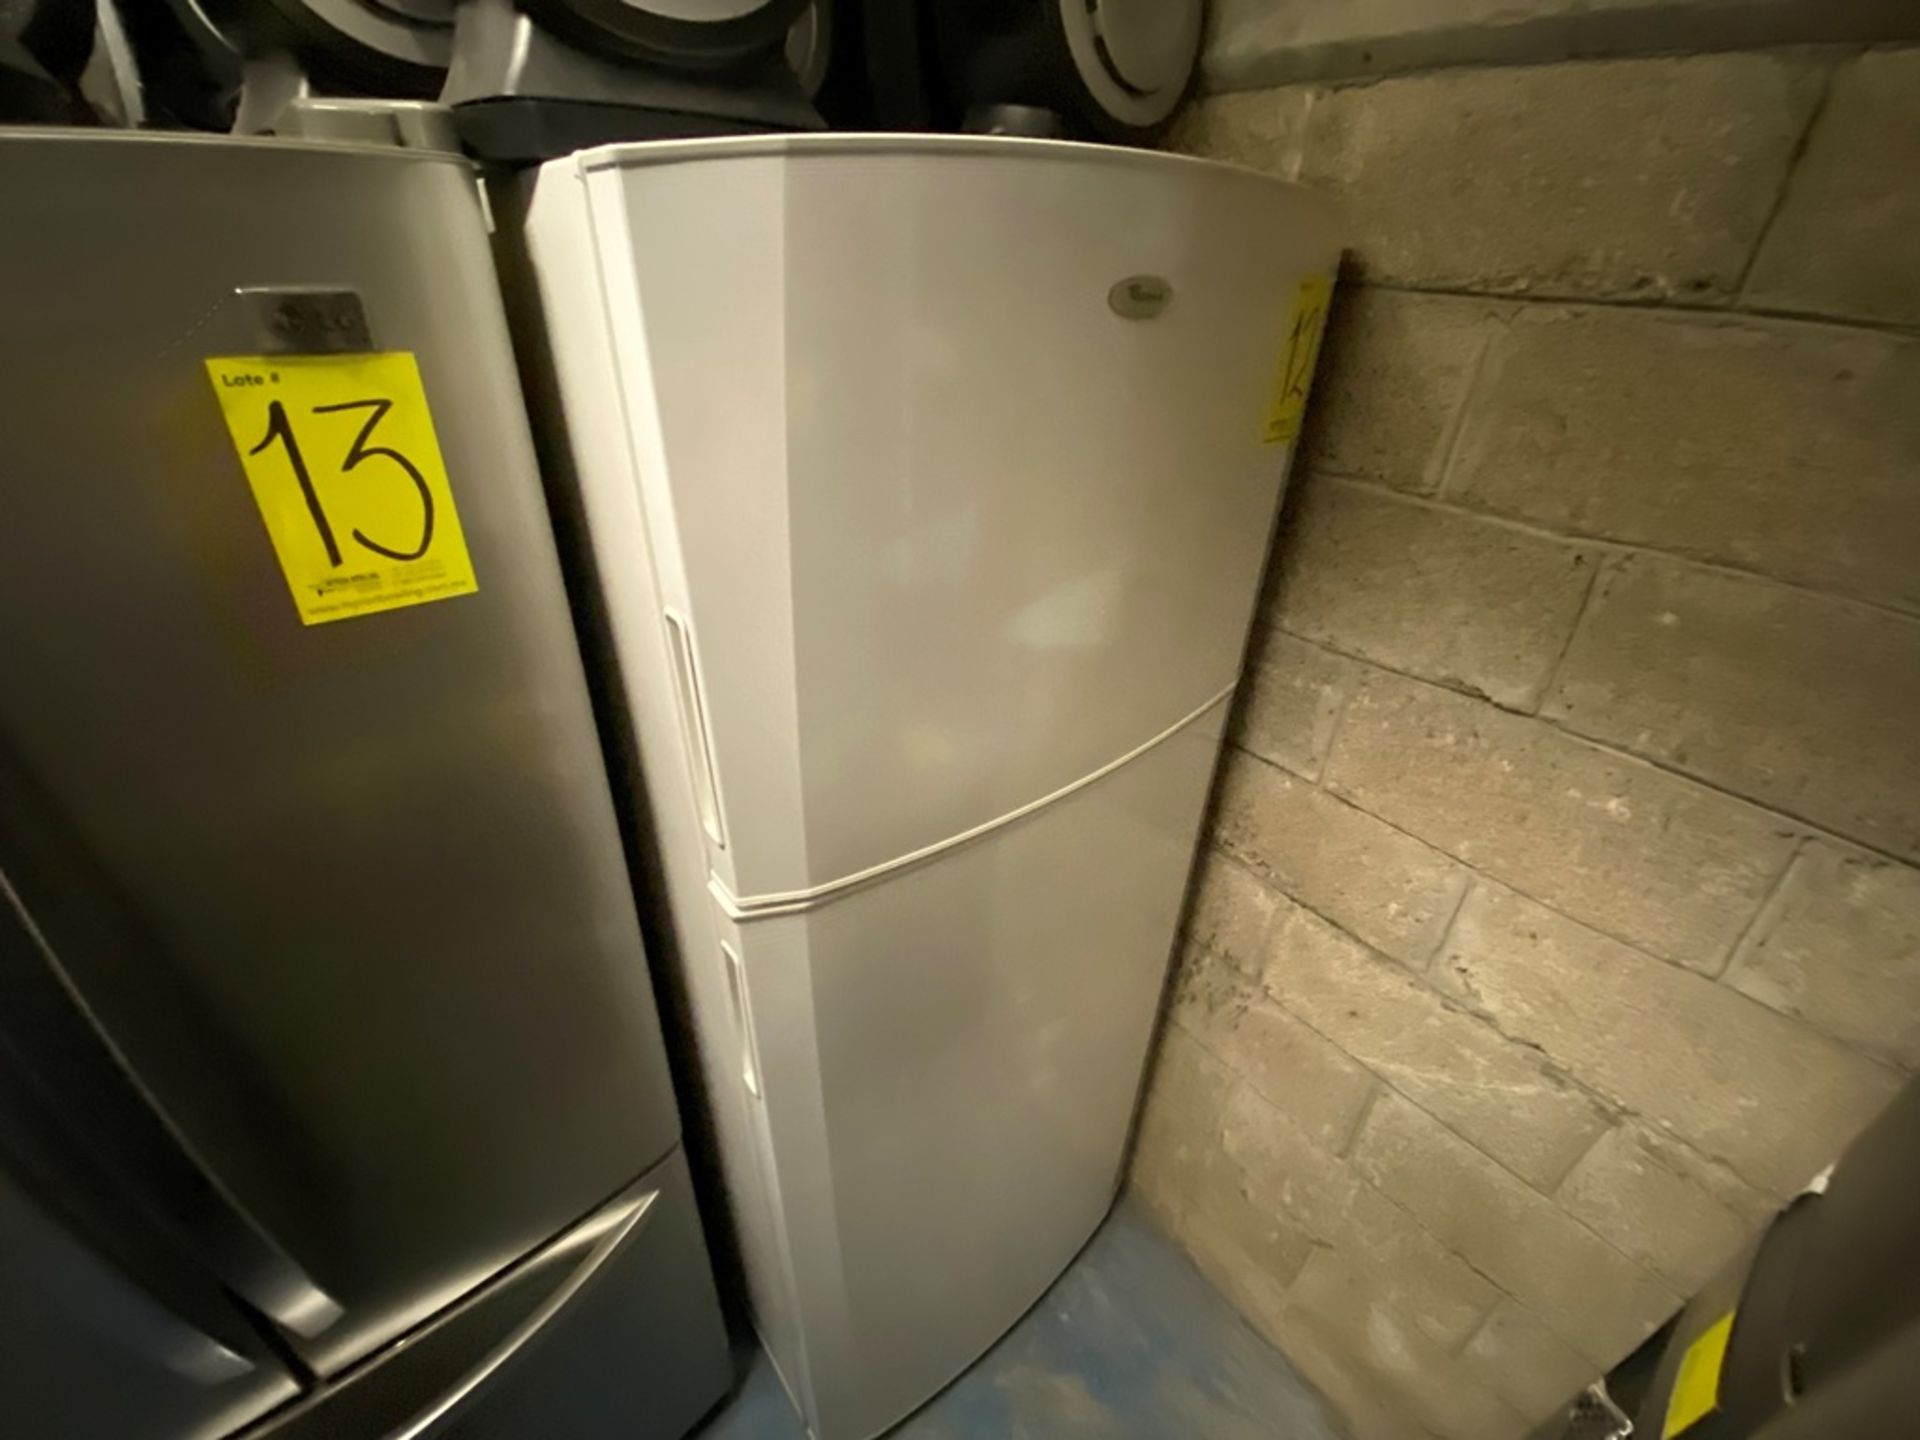 Refrigerador Marca Whirlpool, Modelo WT8002Q Serie VS02347731, Color Blanco Detalles estéticos, fav - Image 4 of 11